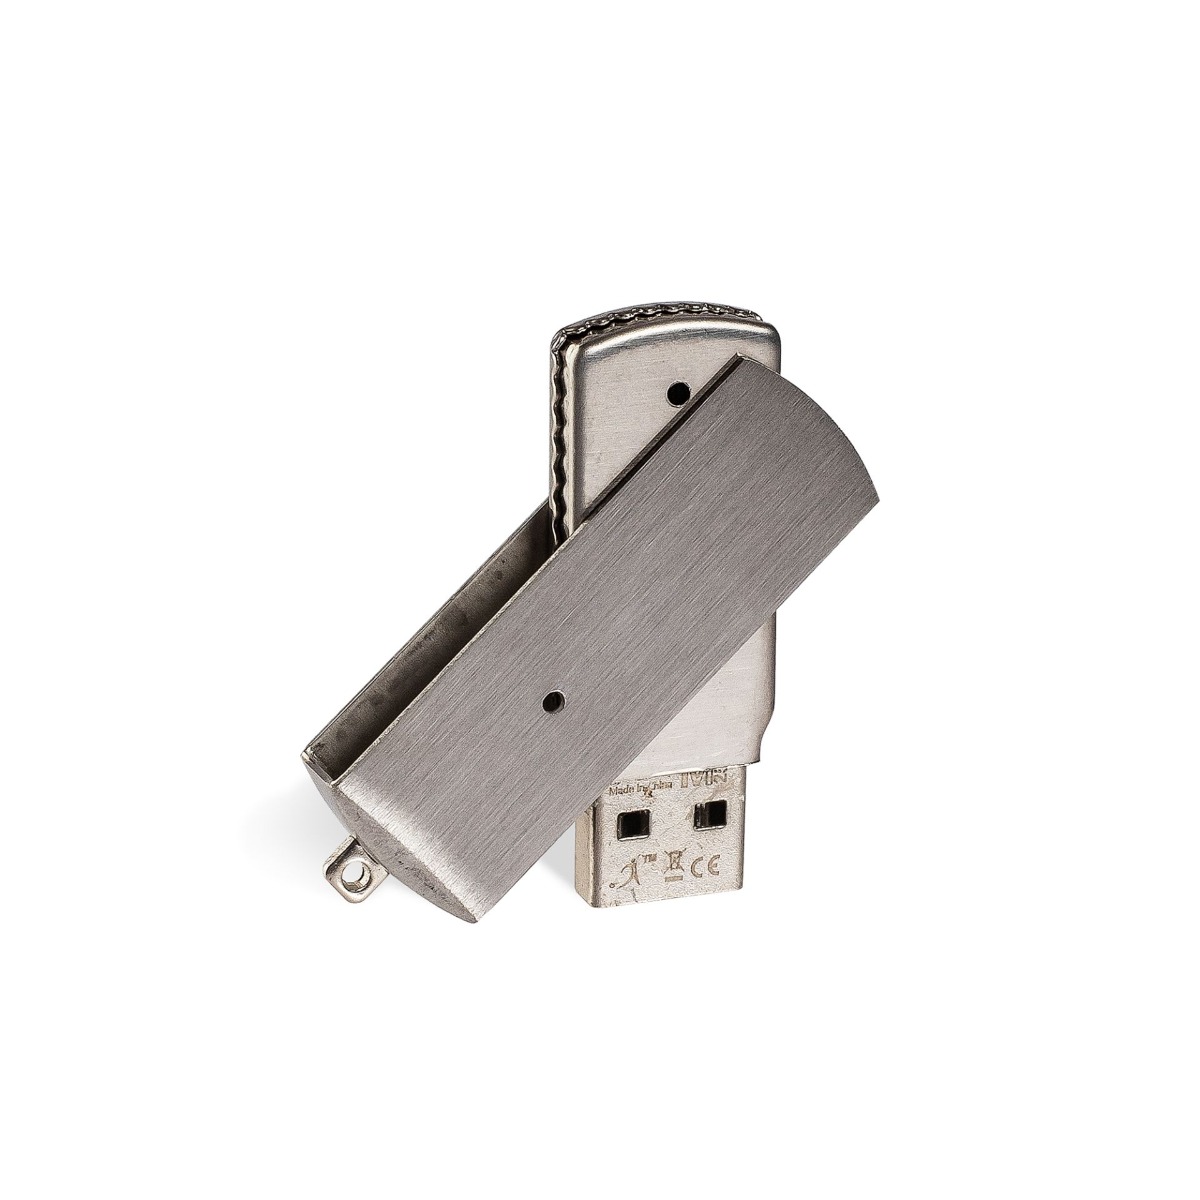 USB-Stick Trailer mit individueller Veredelung